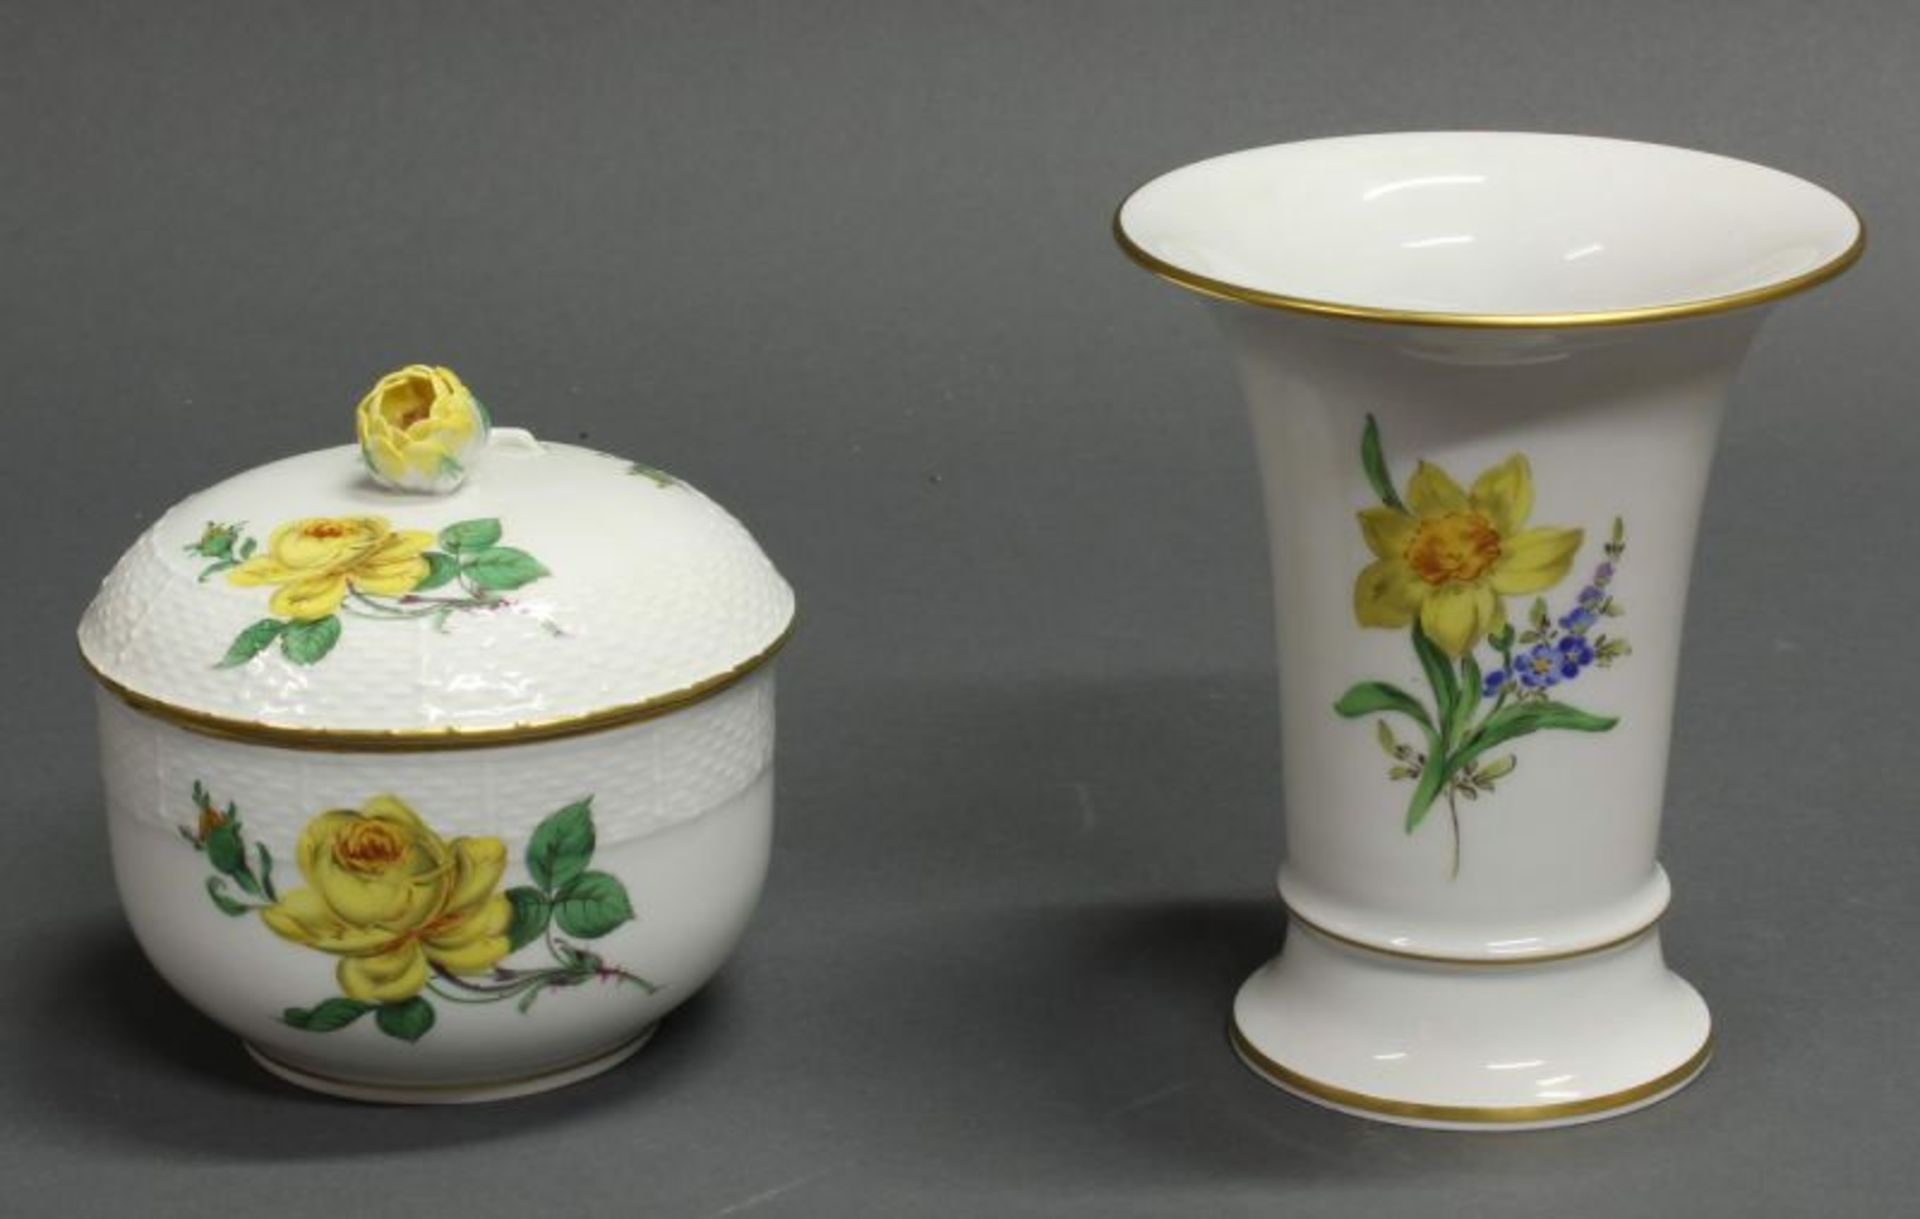 Zuckerdose und Vase, Meissen, Schwertermarke, 2. Wahl, gelbe Rose bzw. Blume 2, 11.5 cm bzw. 14 cm